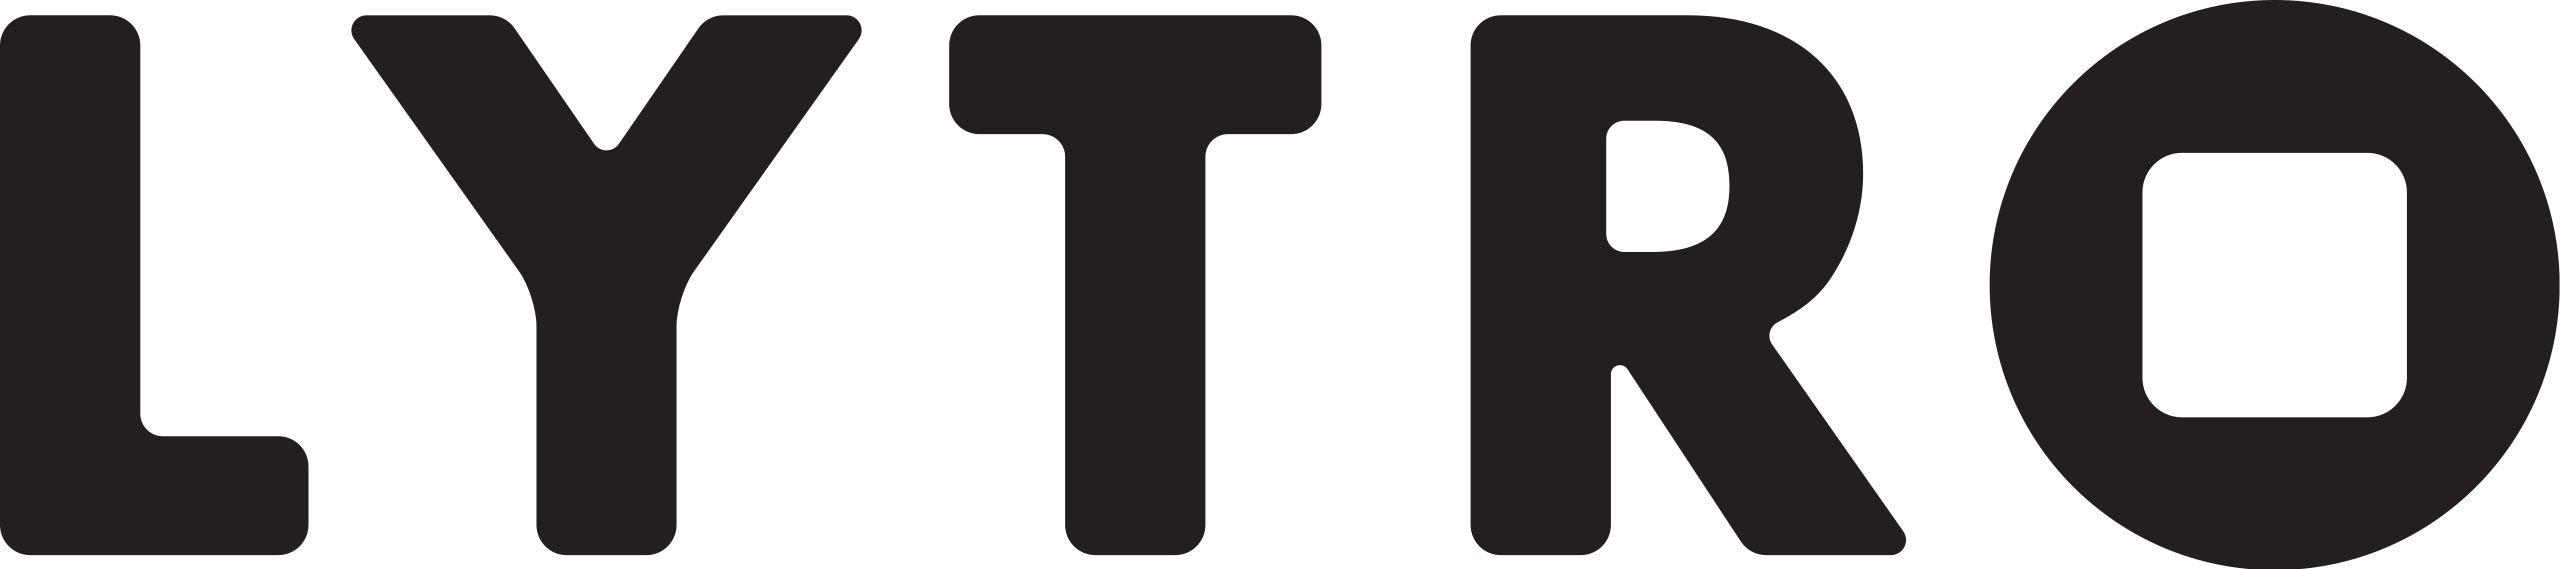 Lytro logo